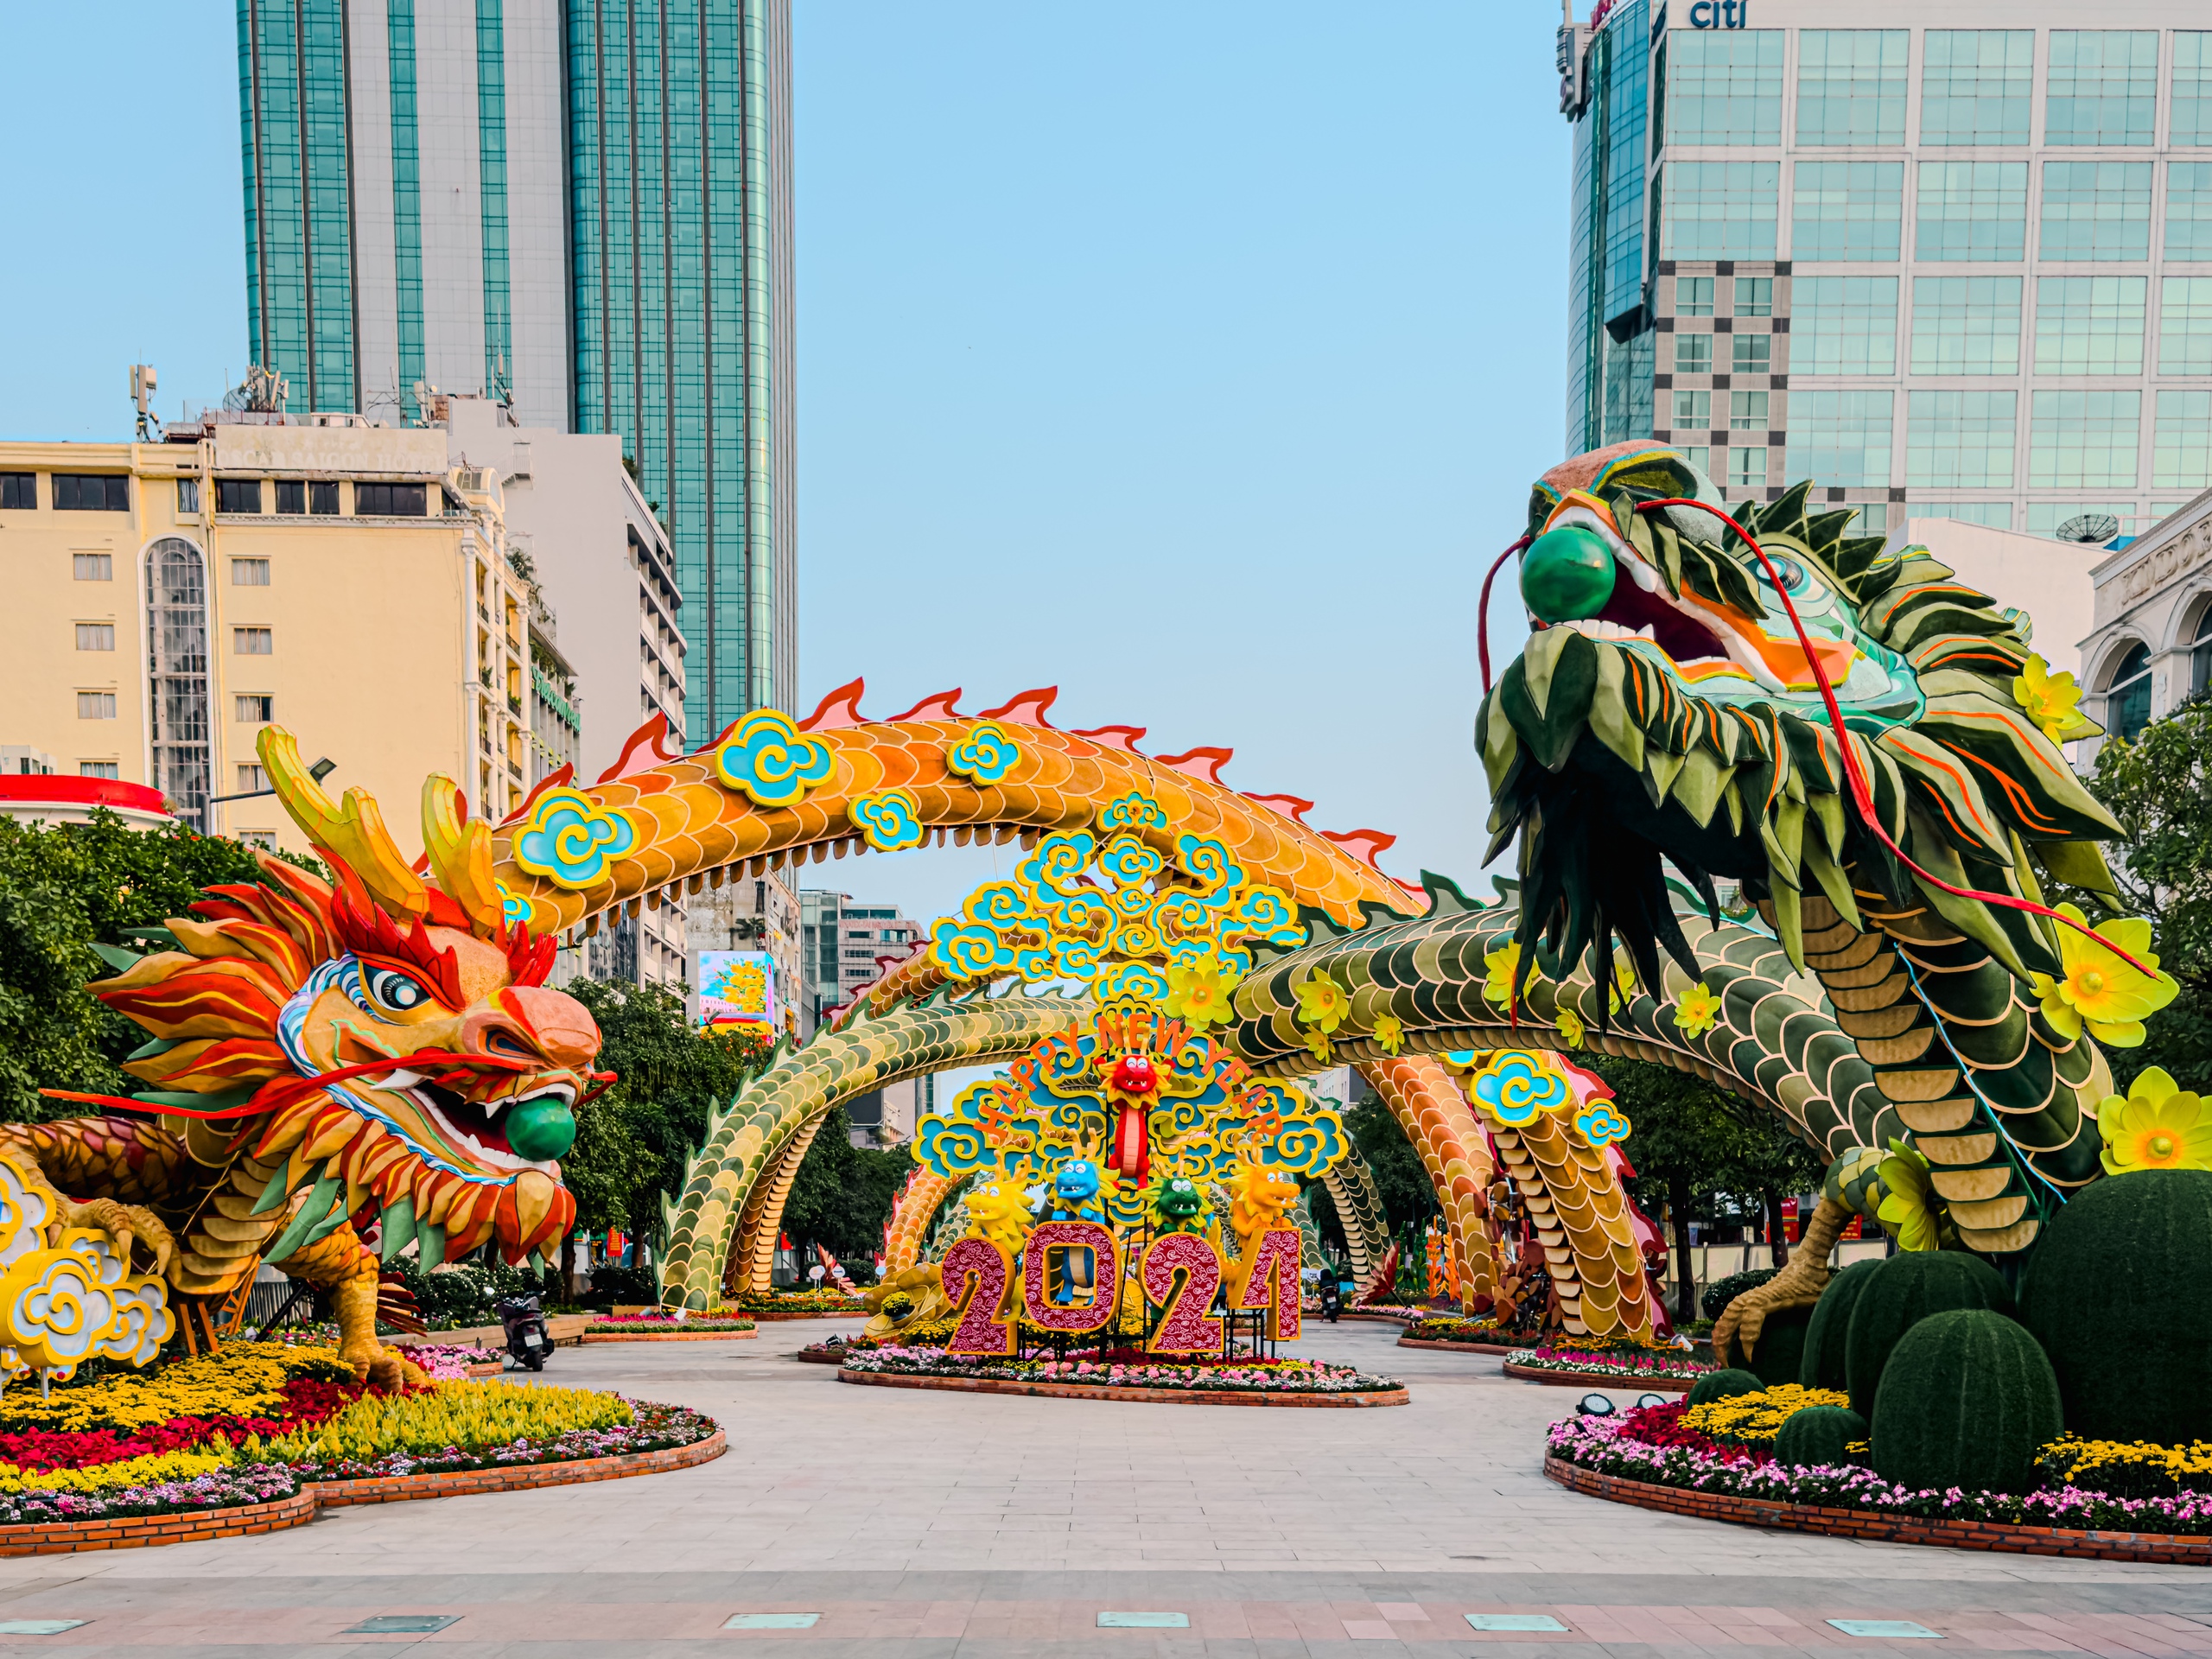 View - Tận mắt thấy rồng bay lượn trên đường hoa Nguyễn Huệ, ngầu không kém linh vật rồng khổng lồ dài 100m